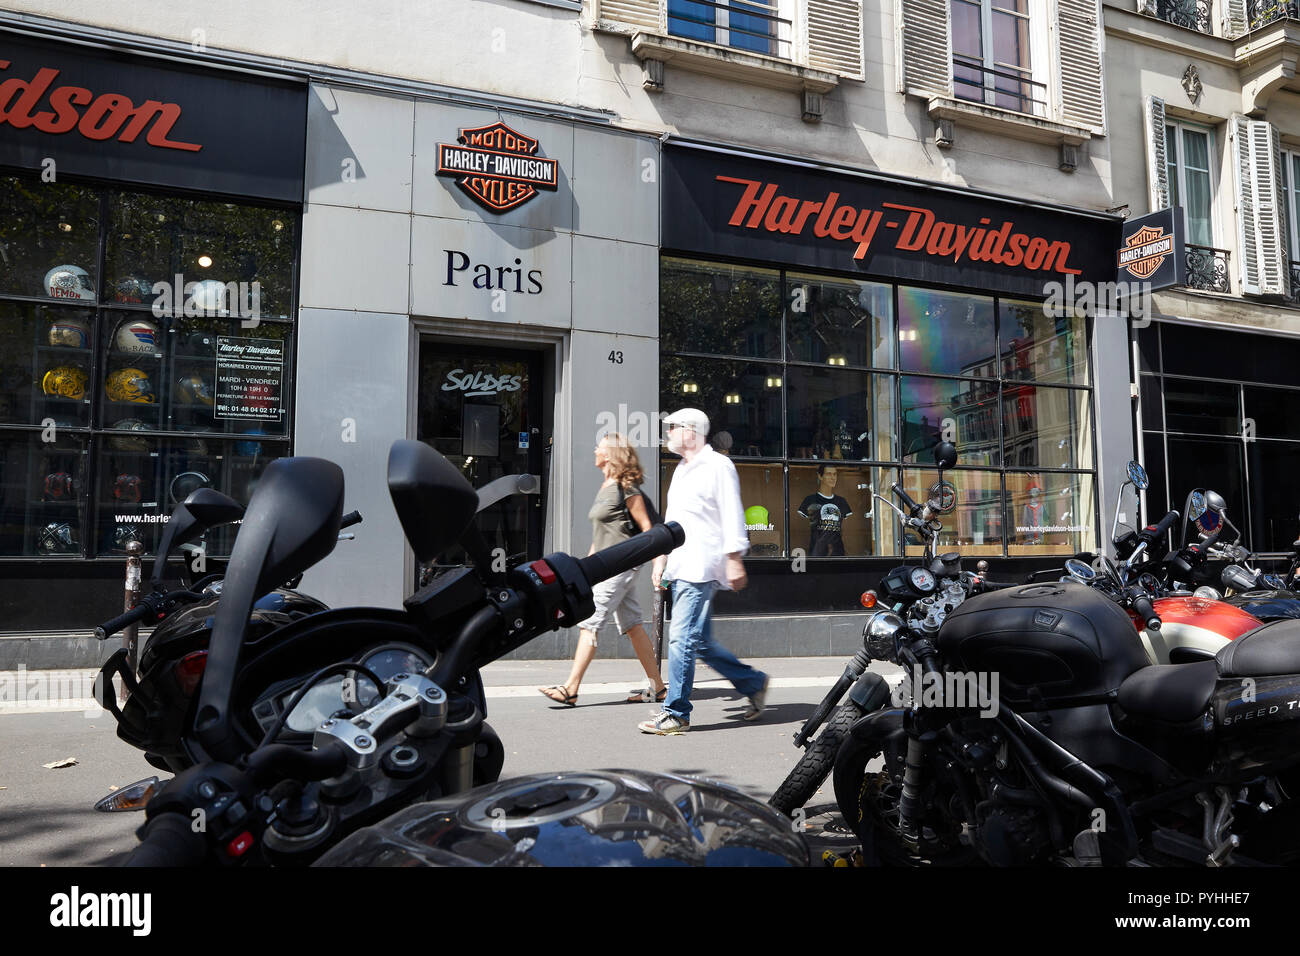 Paris, Ile-de-France, France - The Harley-Davidson Paris-Bastille branch on Boulevard Beaumarchais in the 3rd arrondissement. Stock Photo